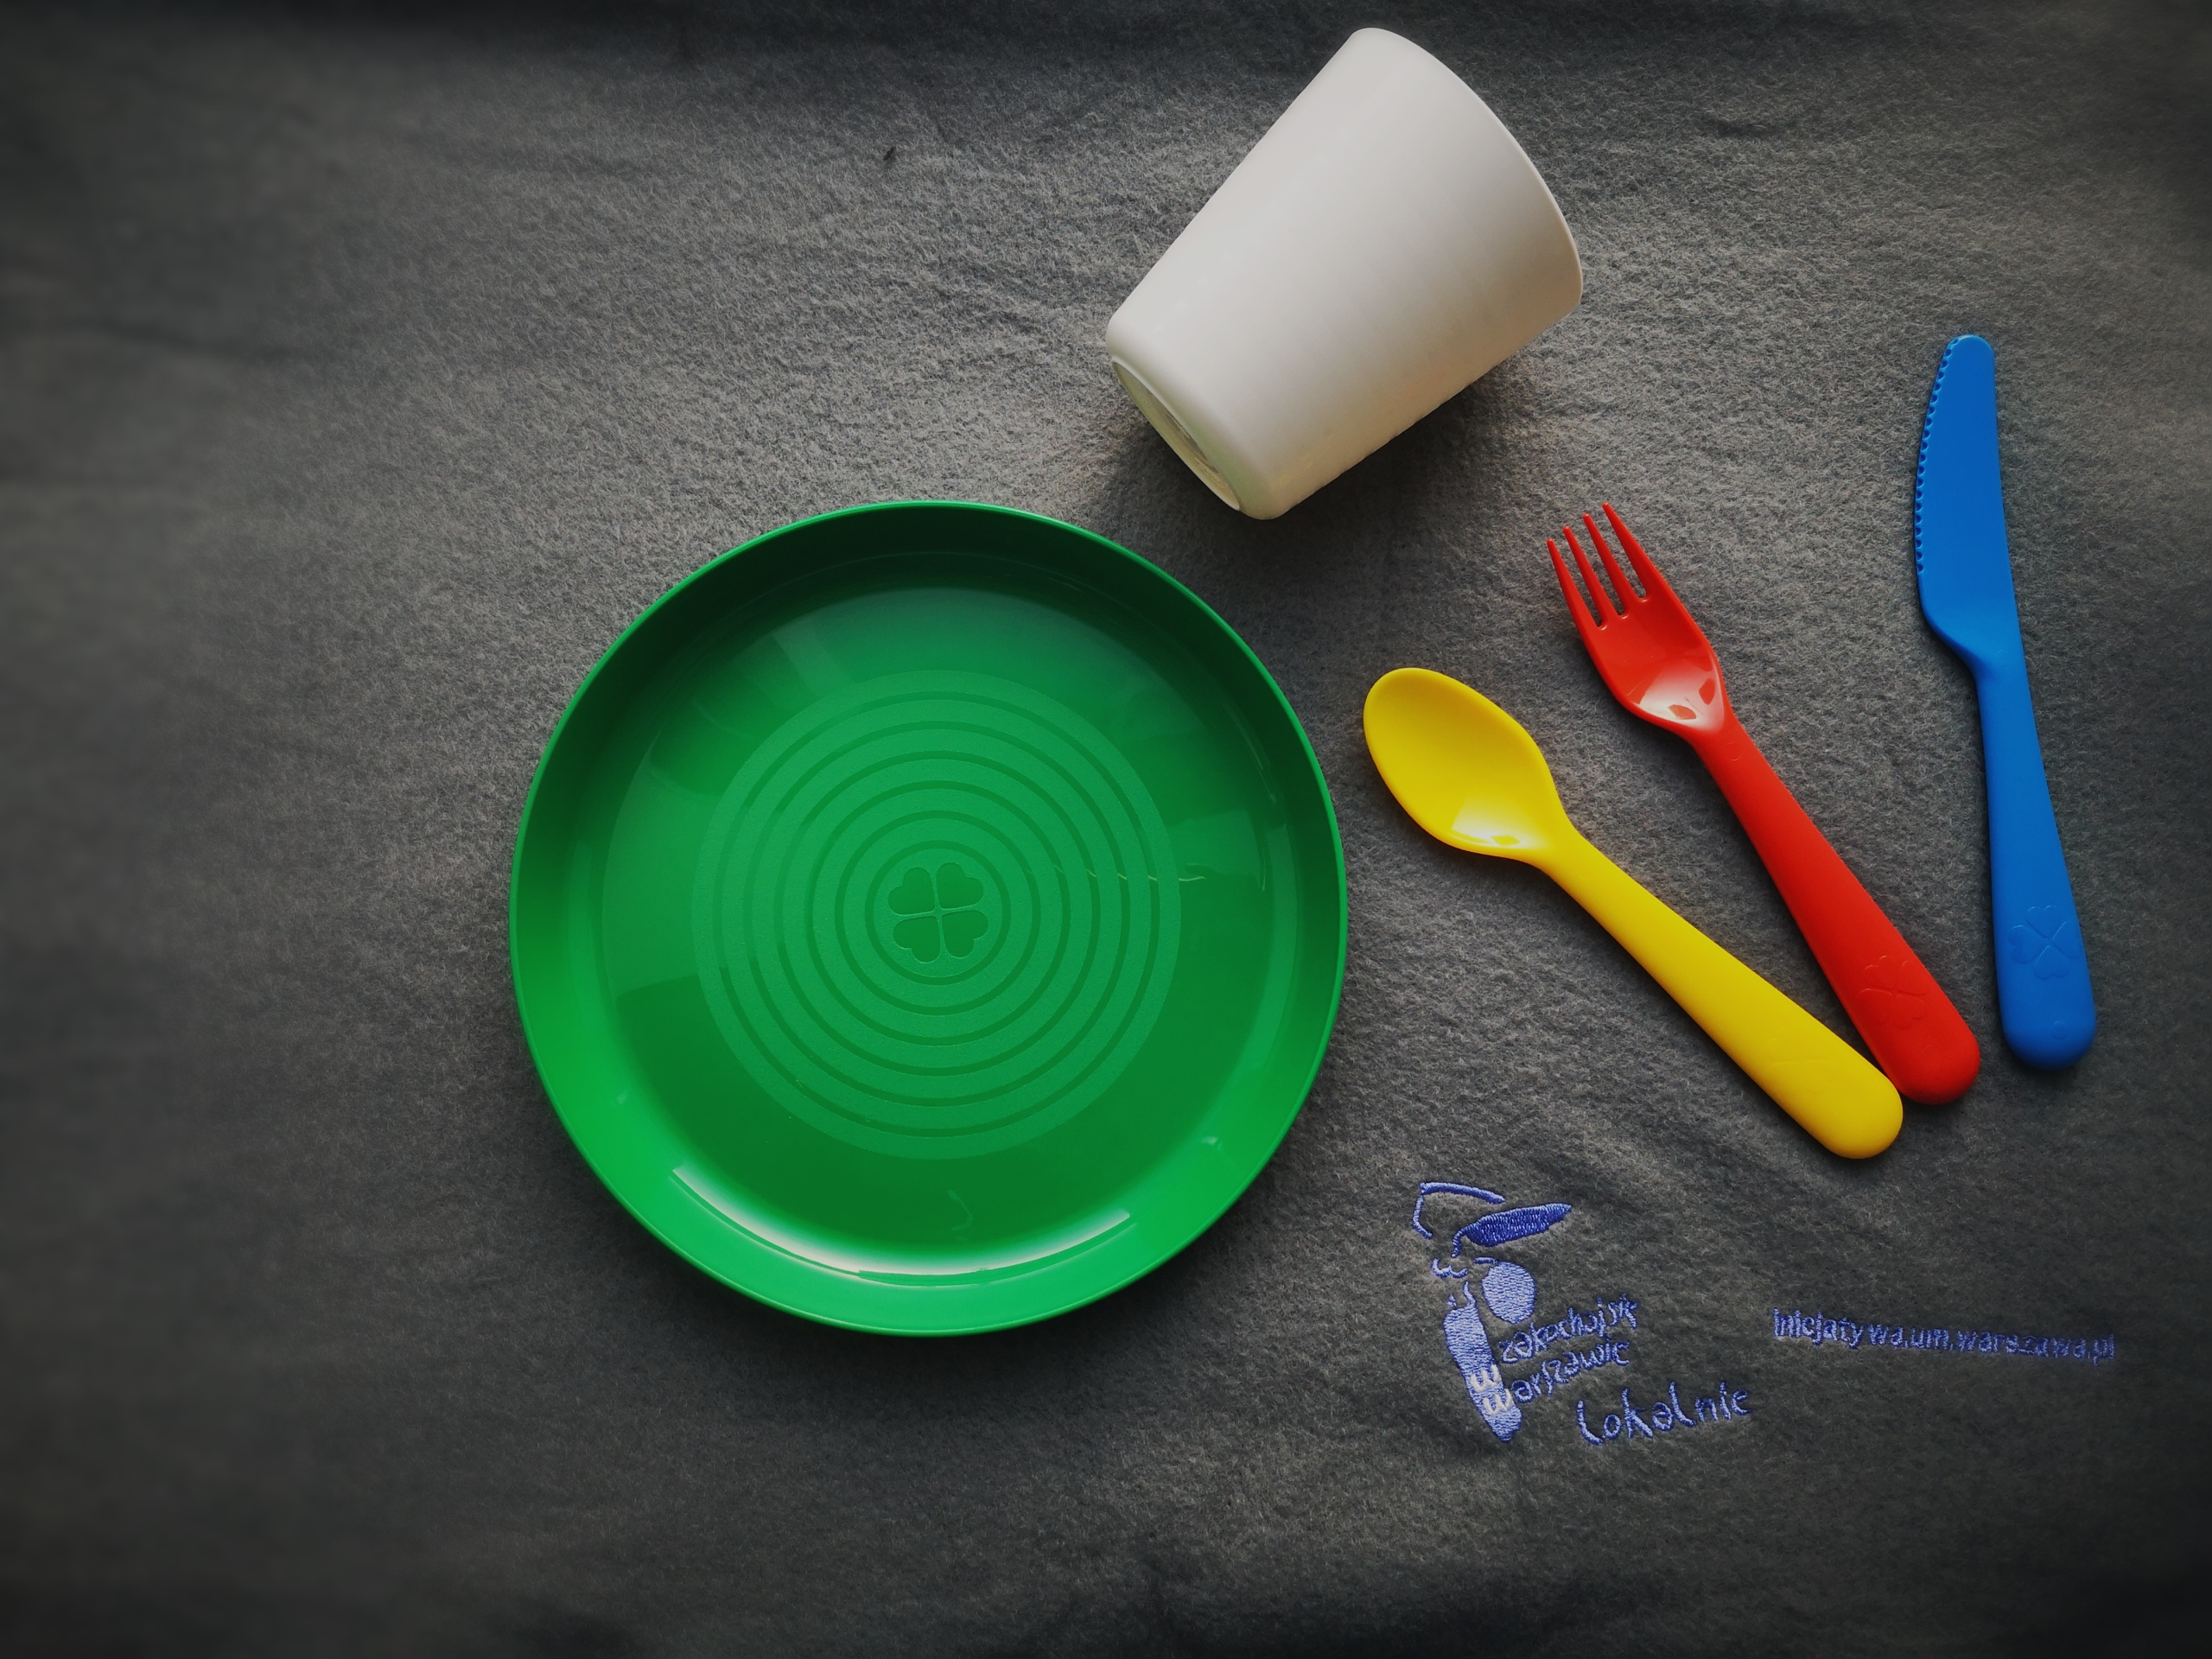 Plastikowy zestaw naczyń: talerzyk, kubek, zestaw sztućców. Każdy z przedmiotów jest w innym kolorze.